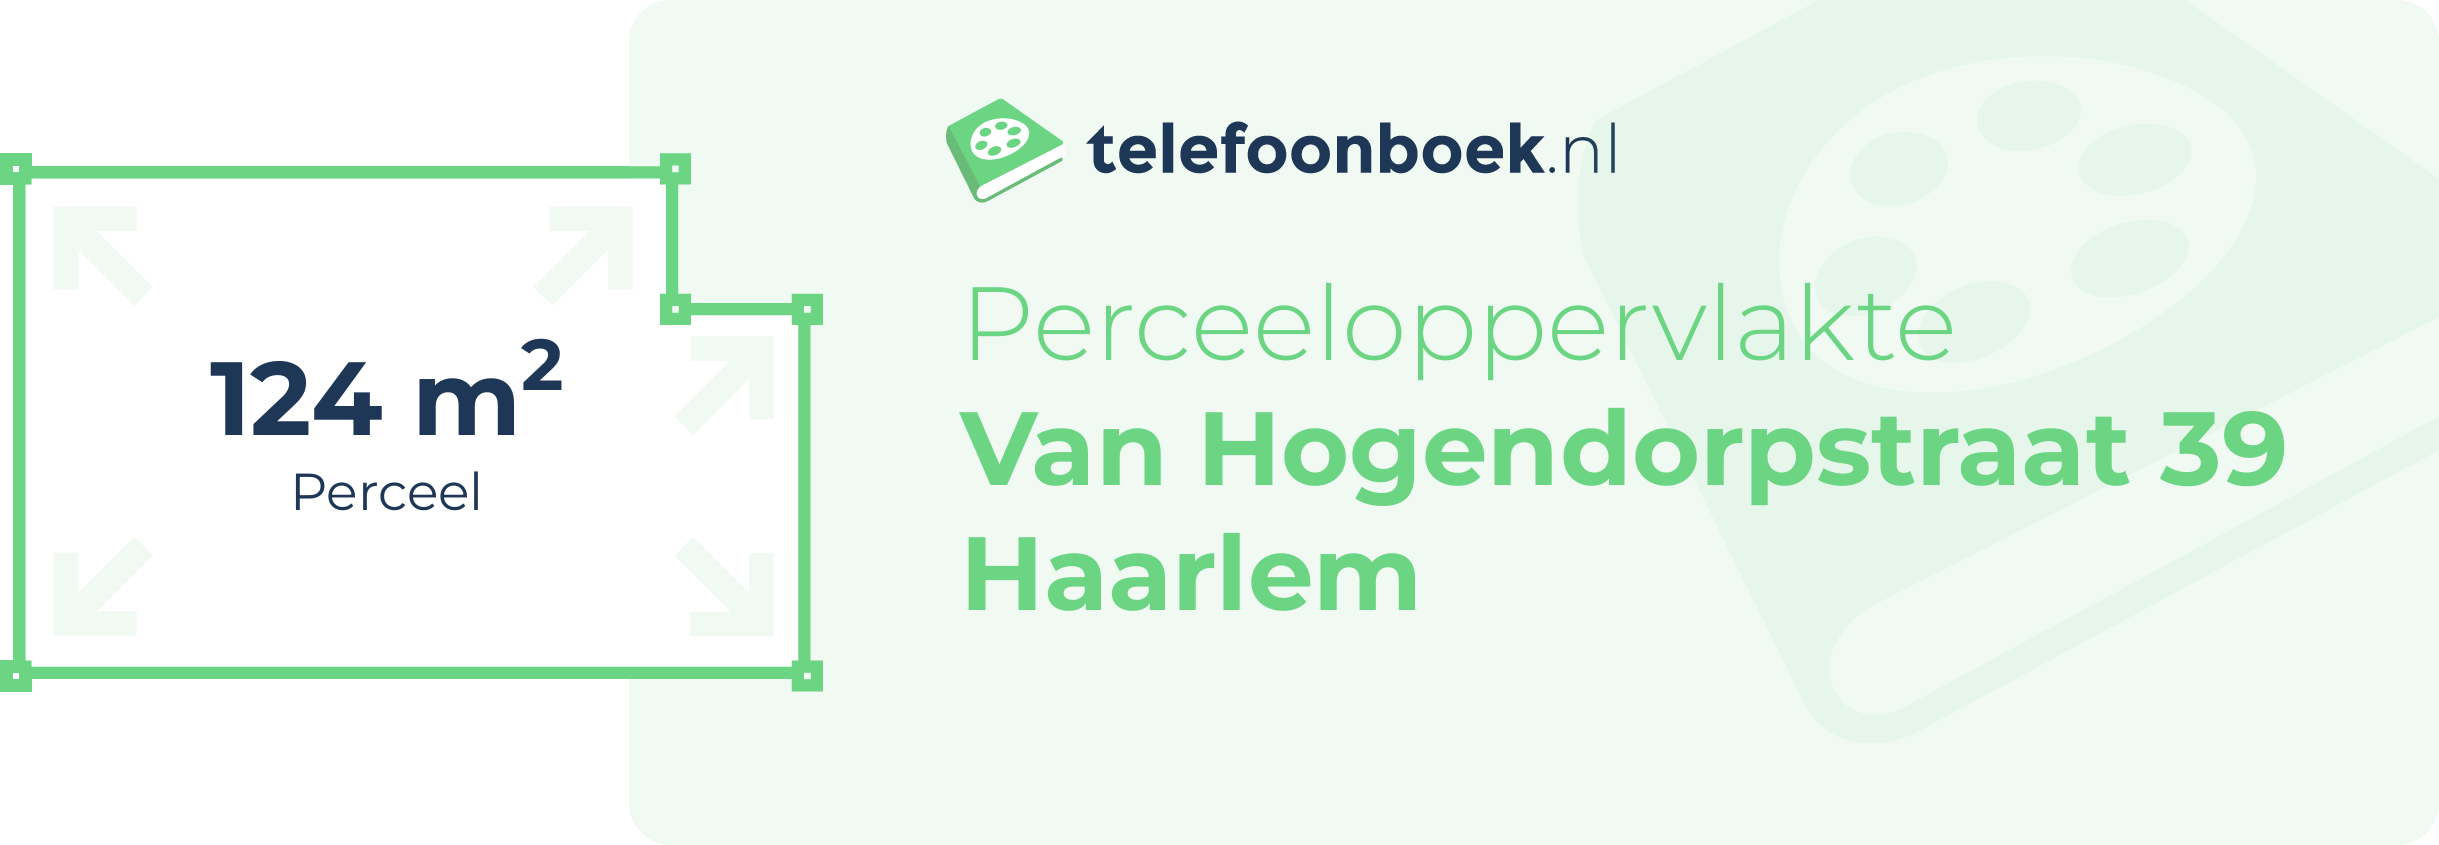 Perceeloppervlakte Van Hogendorpstraat 39 Haarlem